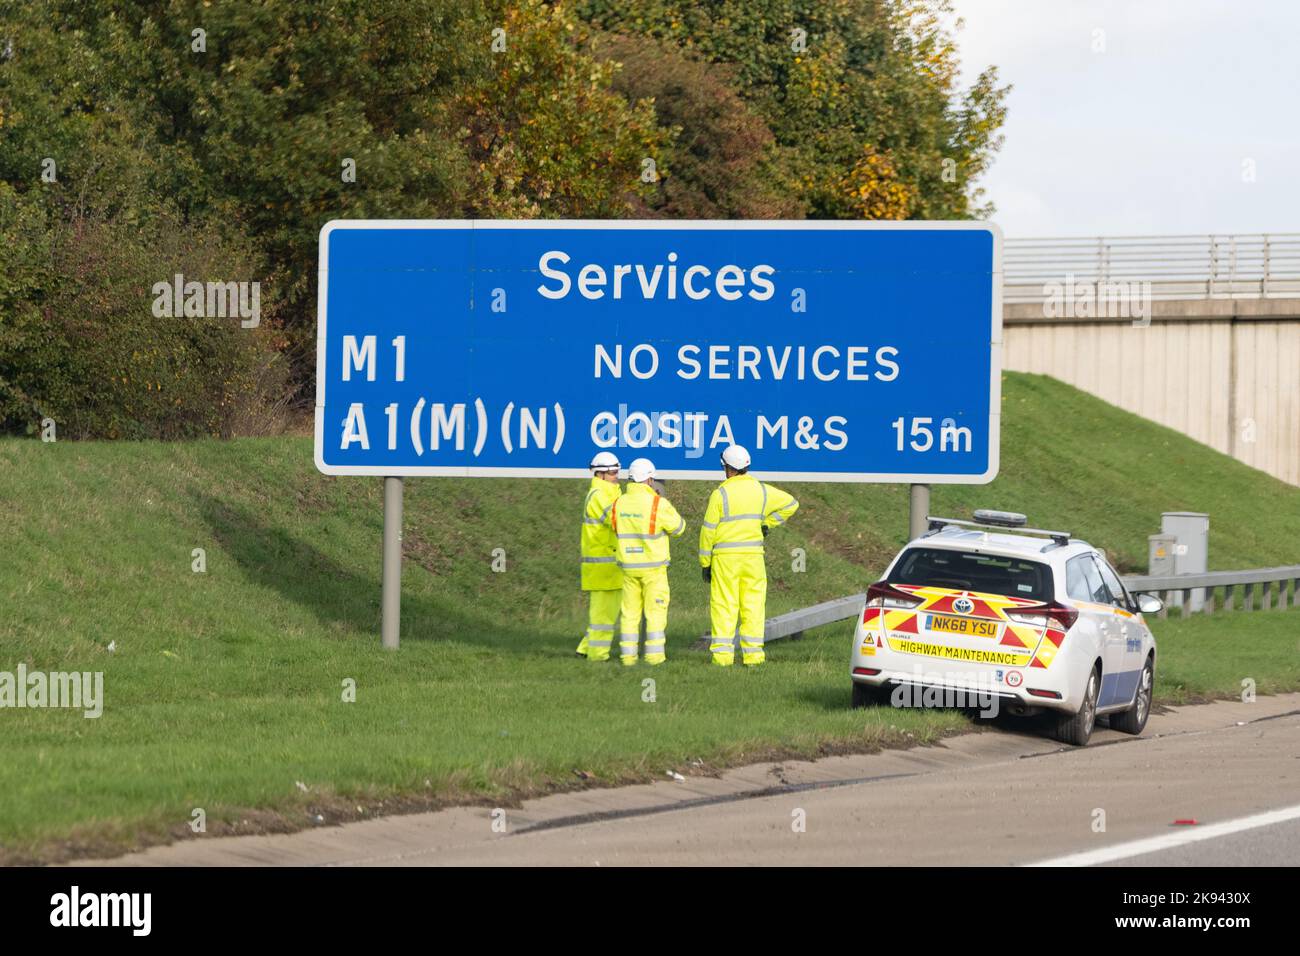 M1-A1 Verbindungsstraße - Arbeiter von Balfour Beatty stehen vor dem Autobahnschild auf der M1-A1 Verbindungsstraße in der Nähe von Leeds, England, Großbritannien Stockfoto